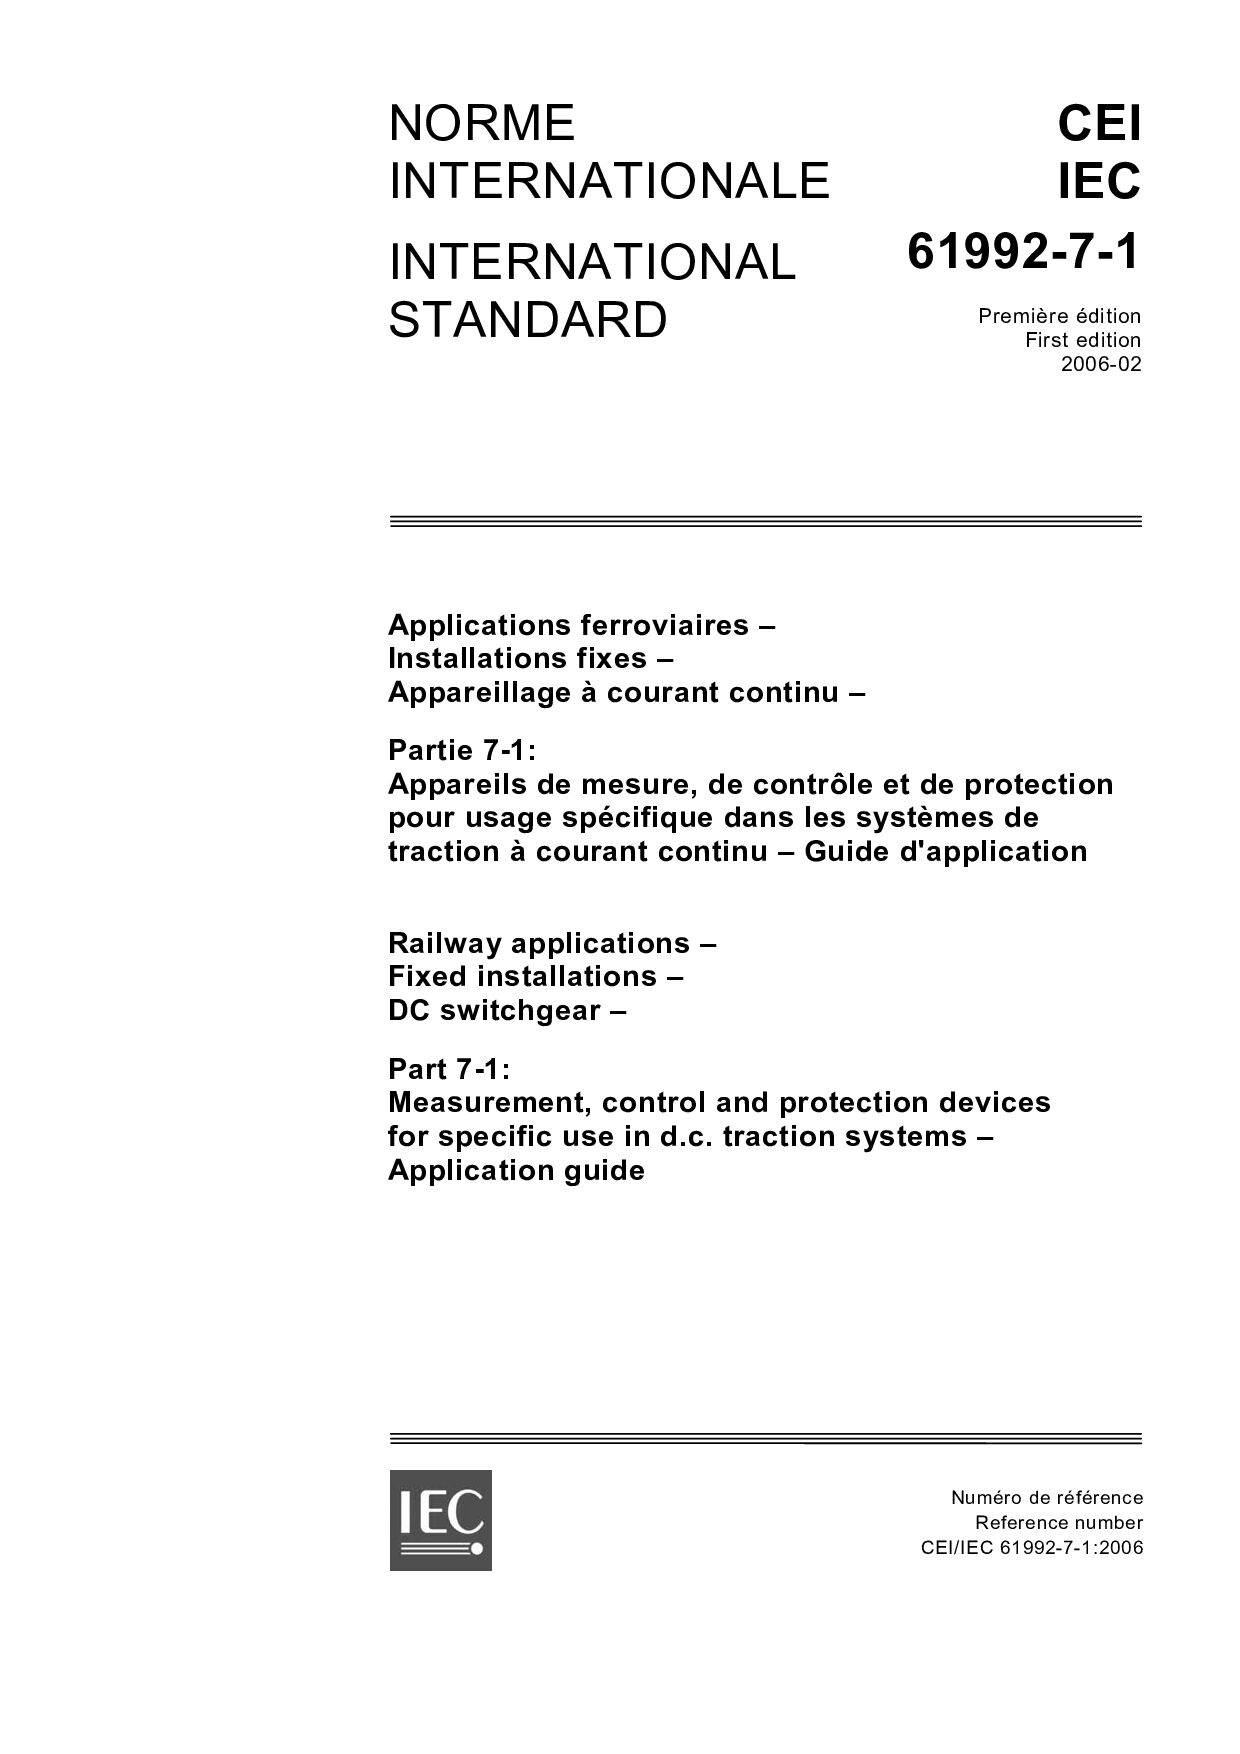 IEC 61992-7-1:2006